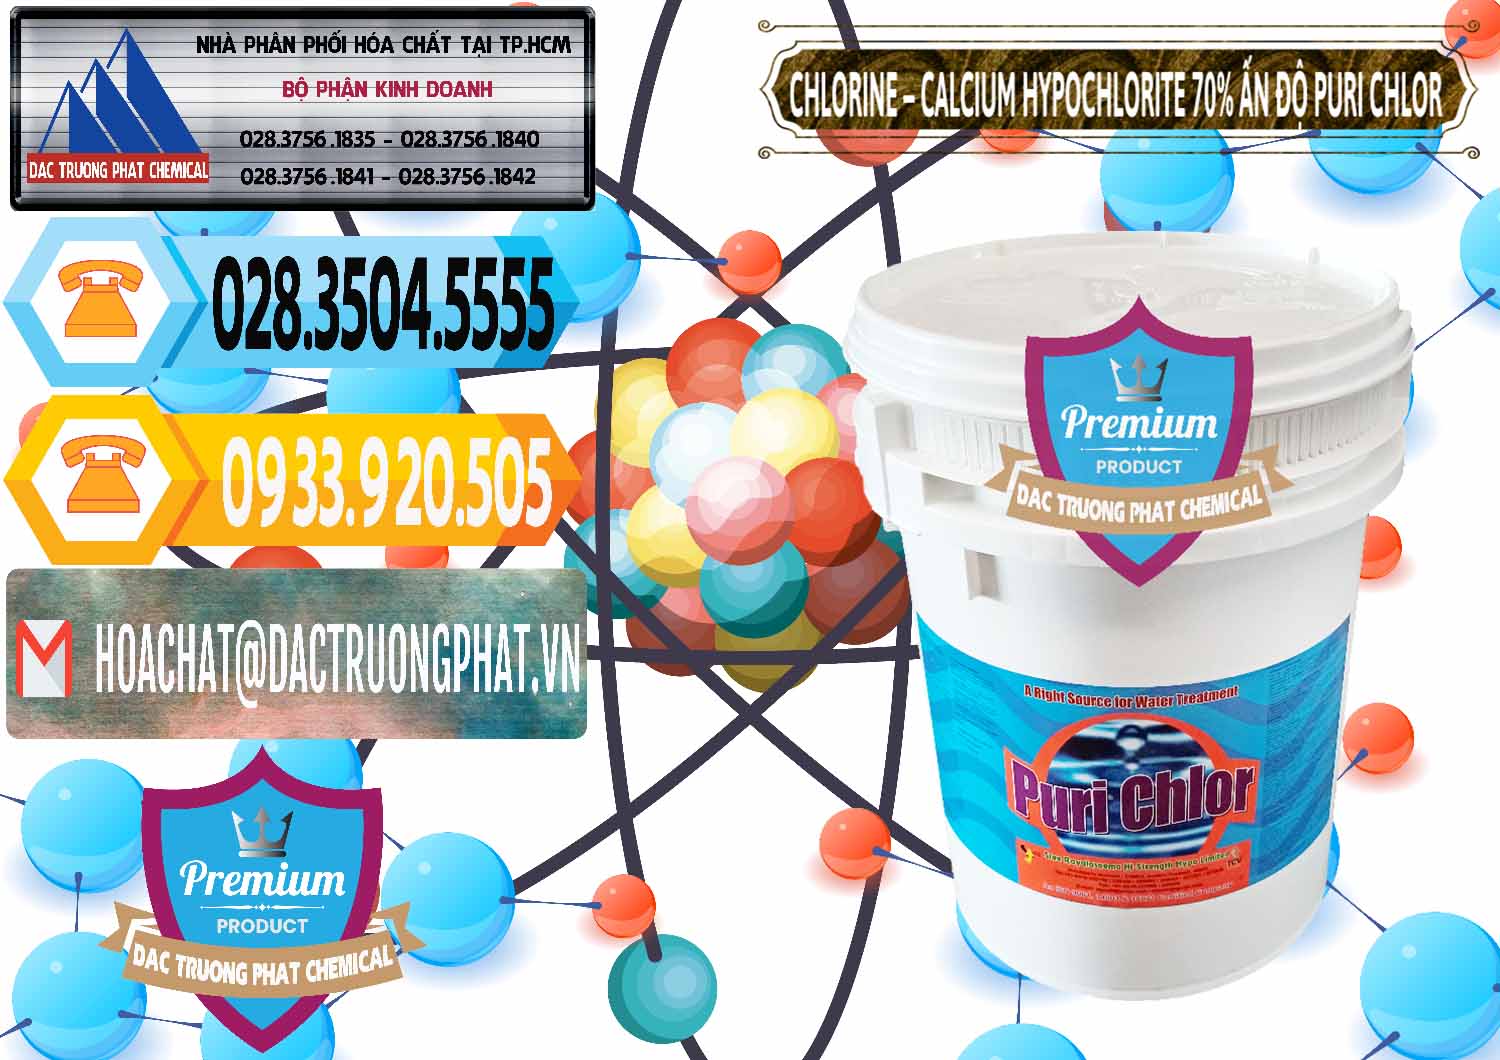 Công ty chuyên bán ( phân phối ) Chlorine – Clorin 70% Puri Chlo Ấn Độ India - 0123 - Cung cấp và kinh doanh hóa chất tại TP.HCM - hoachattayrua.net